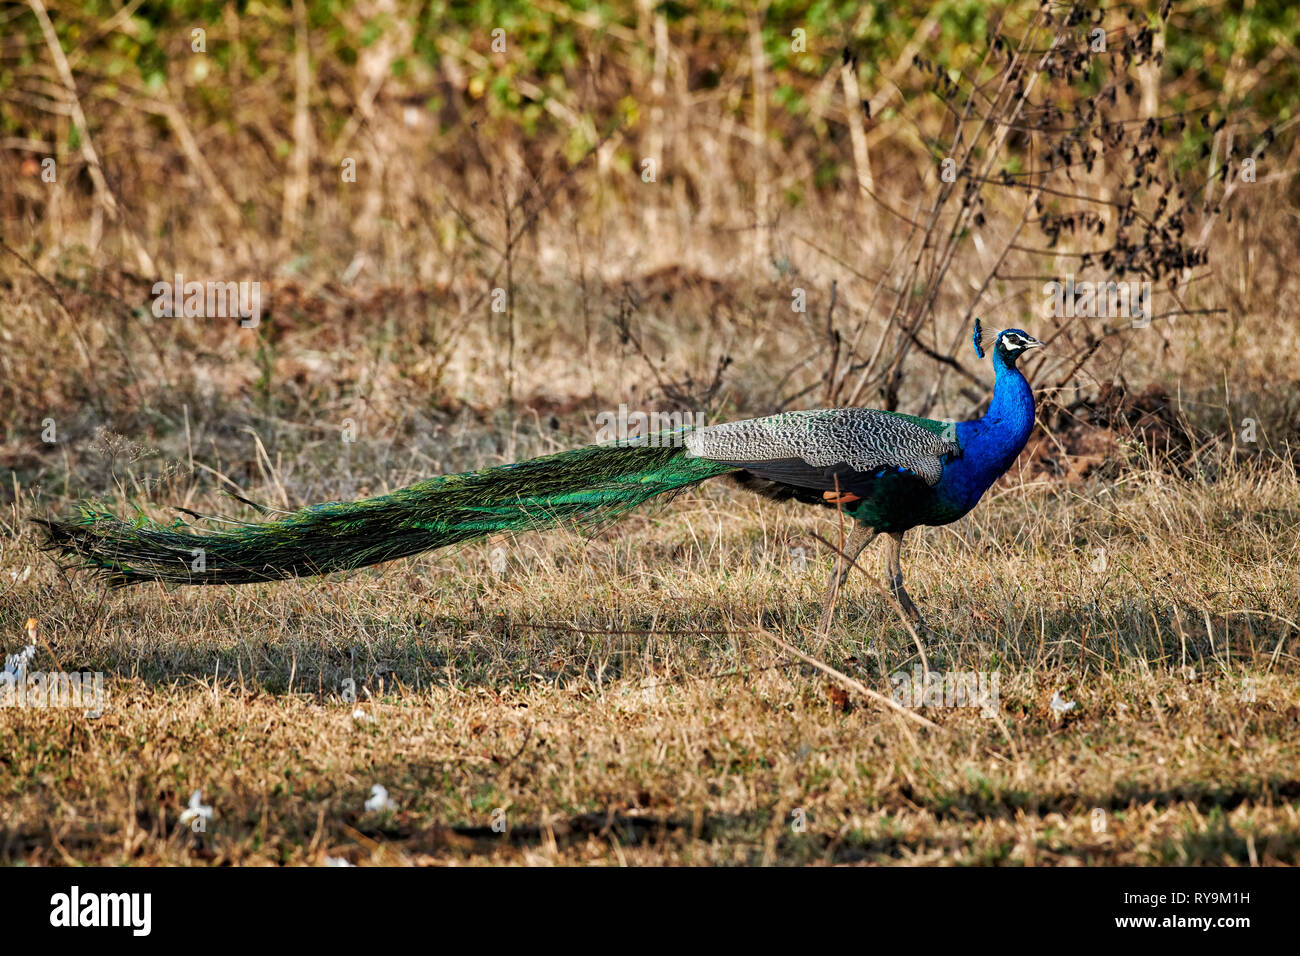 Gemeinsame Peacock, Indischen Pfauen oder blauen Pfau, Pavo cristatus, Bandipur Tiger Reserve, Karnataka, Indien Stockfoto